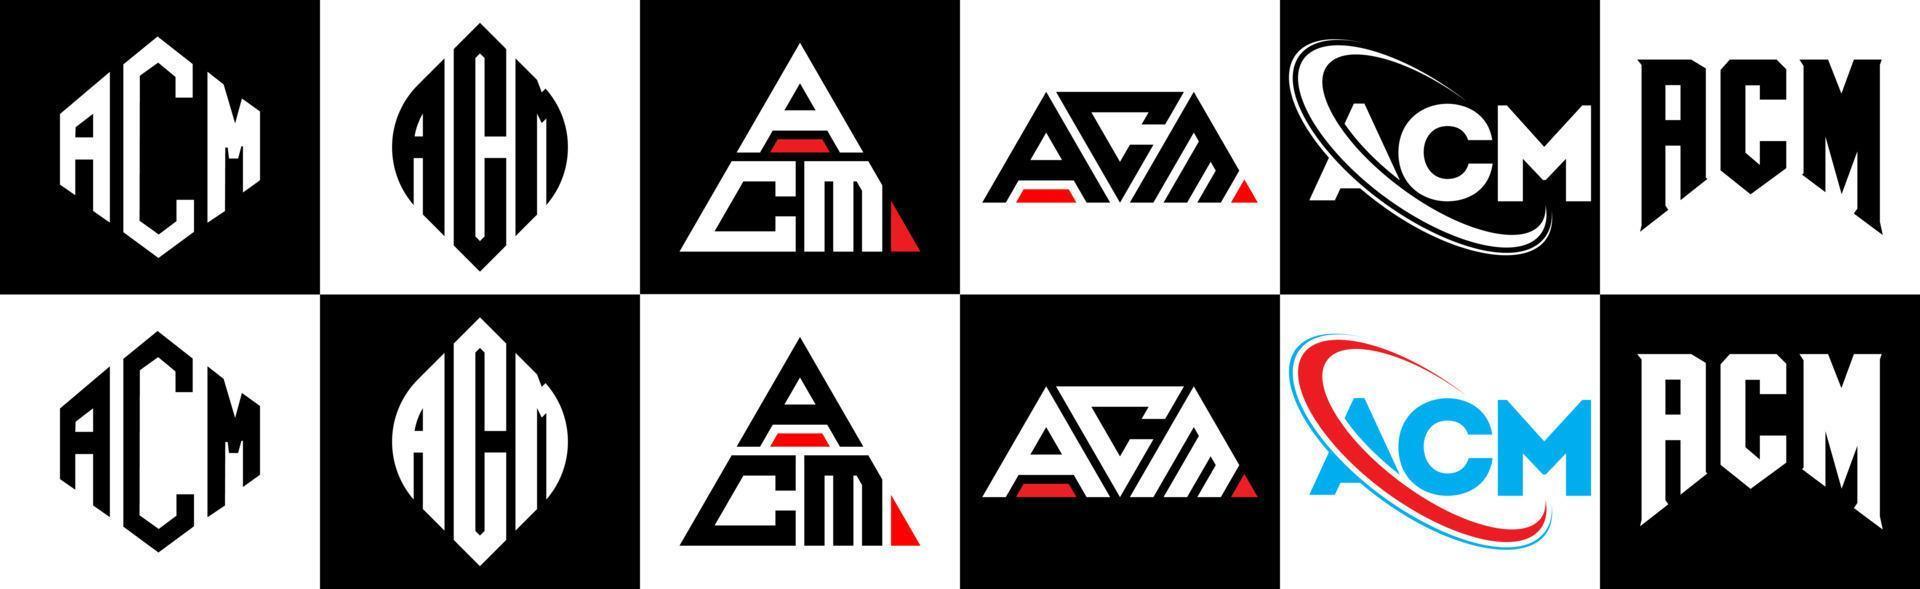 acm brief logo ontwerp in zes stijl. acm veelhoek, cirkel, driehoek, zeshoek, vlak en gemakkelijk stijl met zwart en wit kleur variatie brief logo reeks in een tekengebied. acm minimalistische en klassiek logo vector